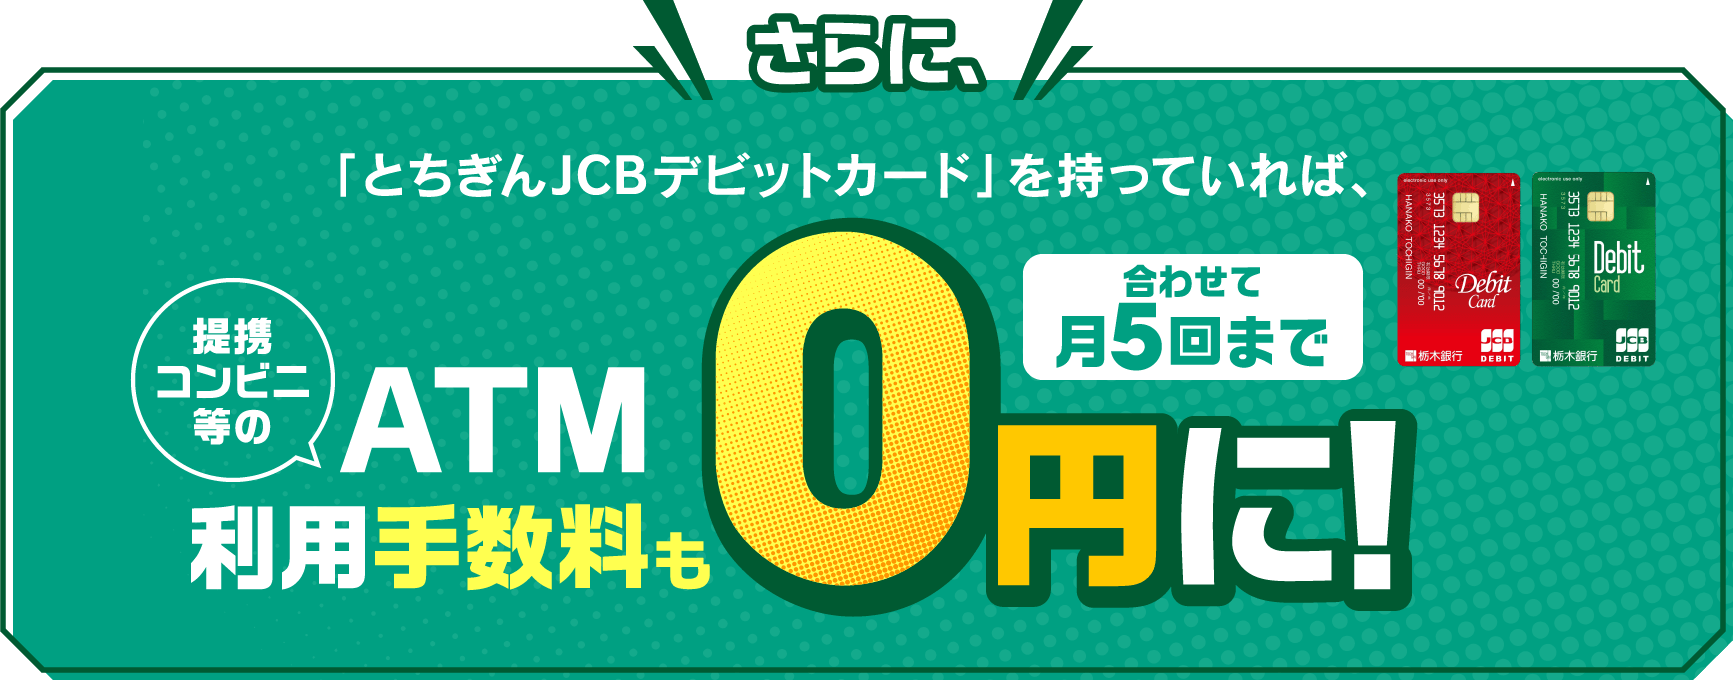 さらに、｢とちぎんJCBデビットカード｣を持っていれば、ATM利用手数料も0円に!